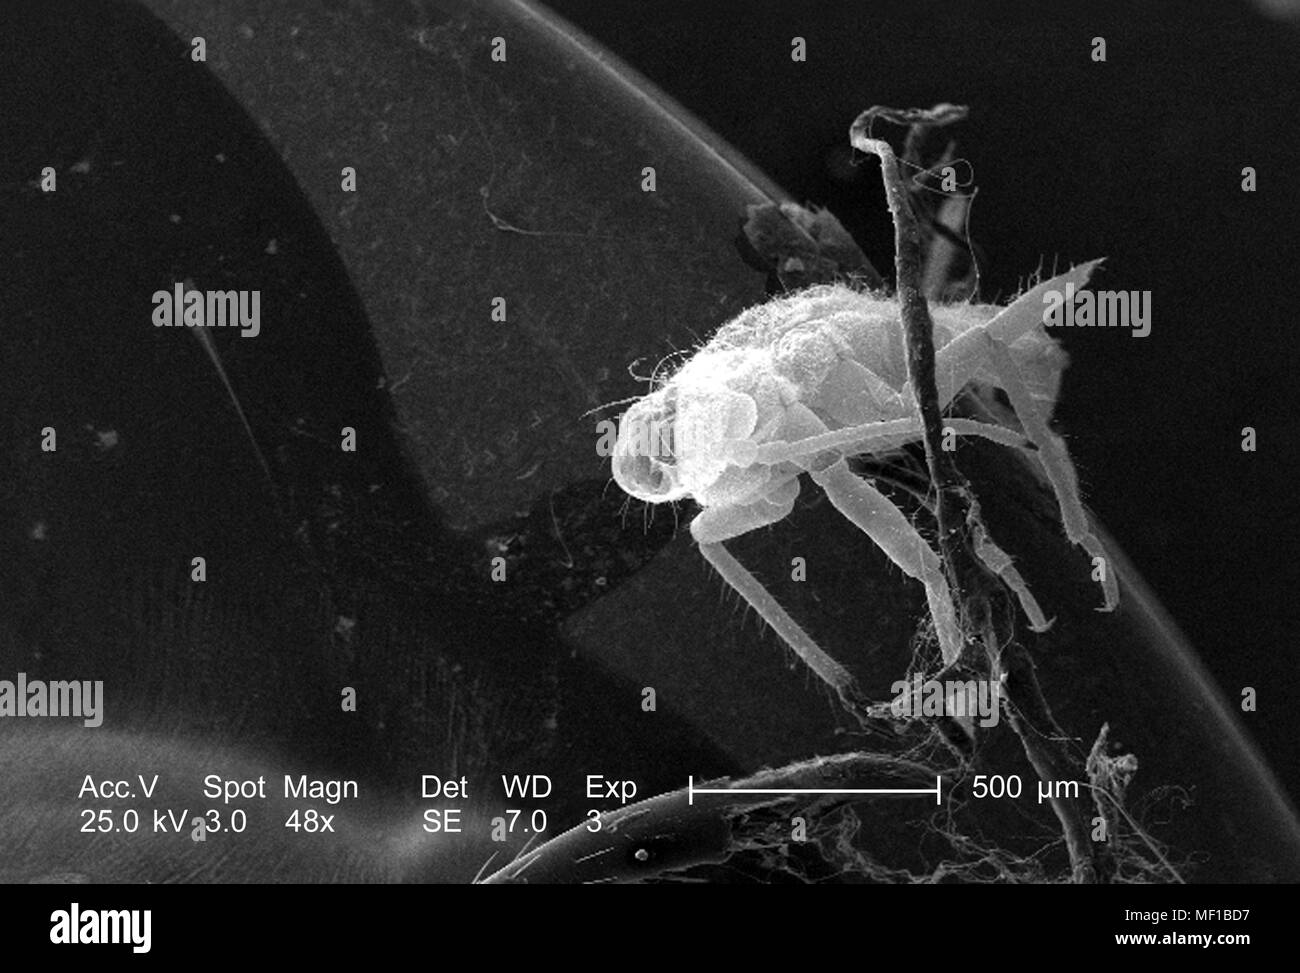 Piccolo insetto non identificato presente su dragonfly exoskeletal superficie, ha rivelato nel 48x di scansione ingrandita al microscopio elettronico (SEM) immagine, 2005. Immagine cortesia di centri per il controllo delle malattie (CDC) / Janice Haney Carr, Connie fiori. () Foto Stock